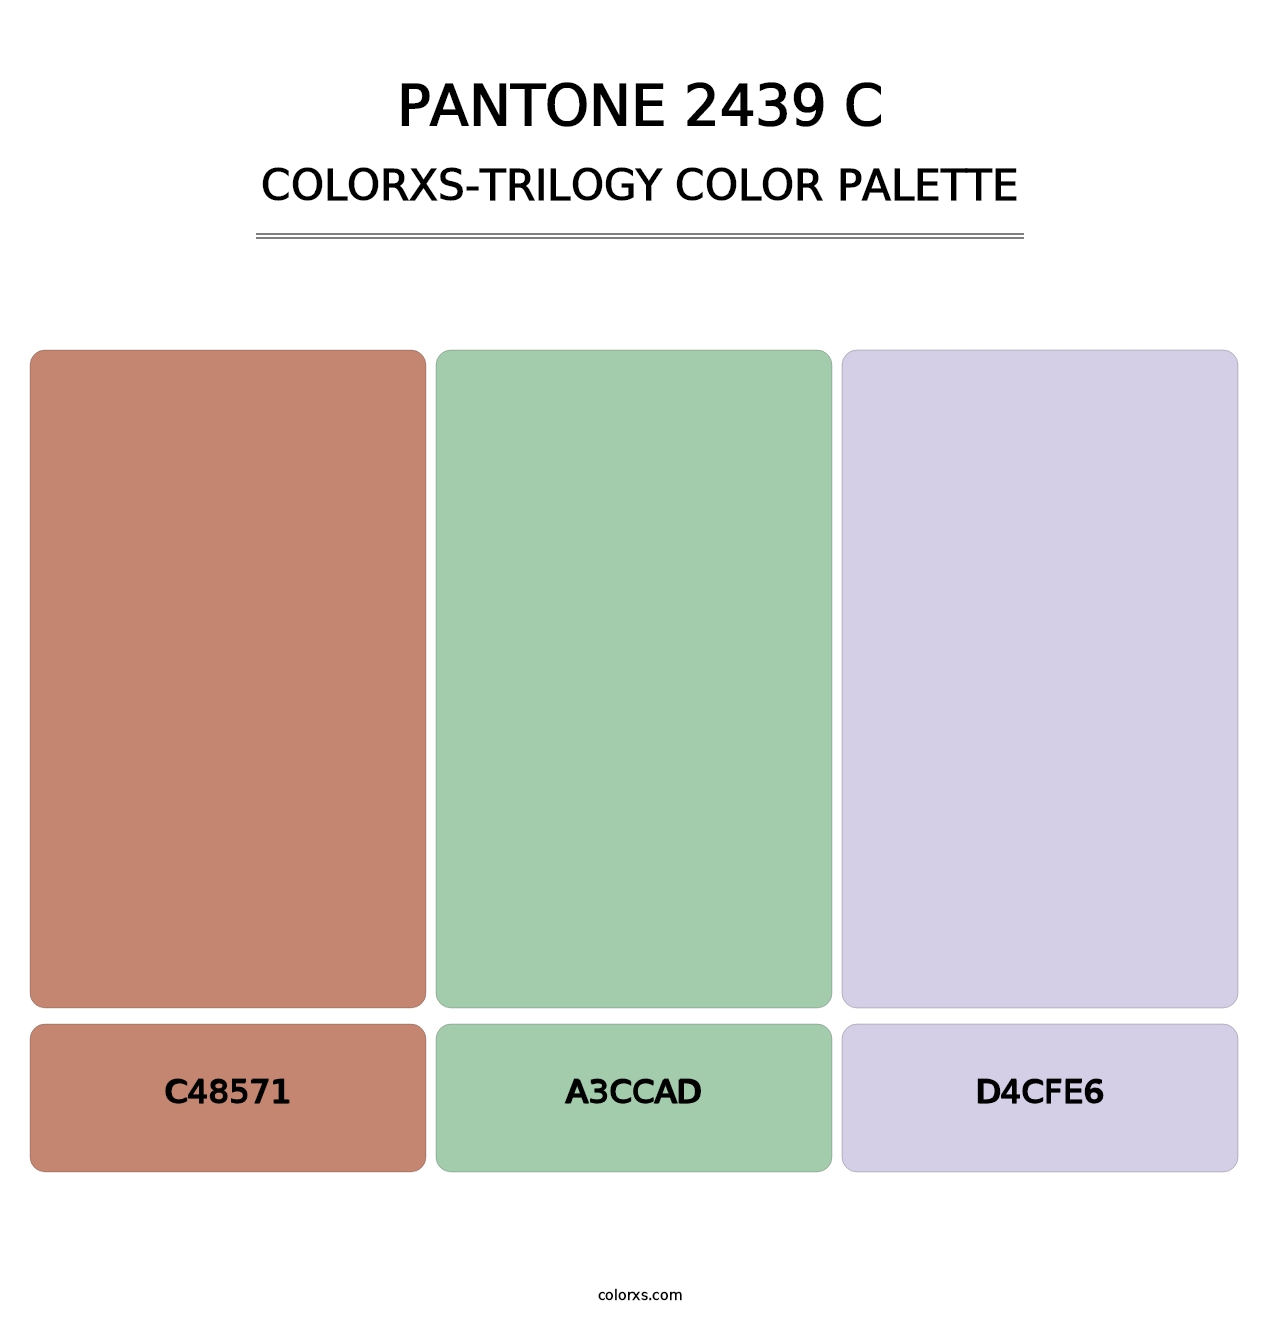 PANTONE 2439 C - Colorxs Trilogy Palette